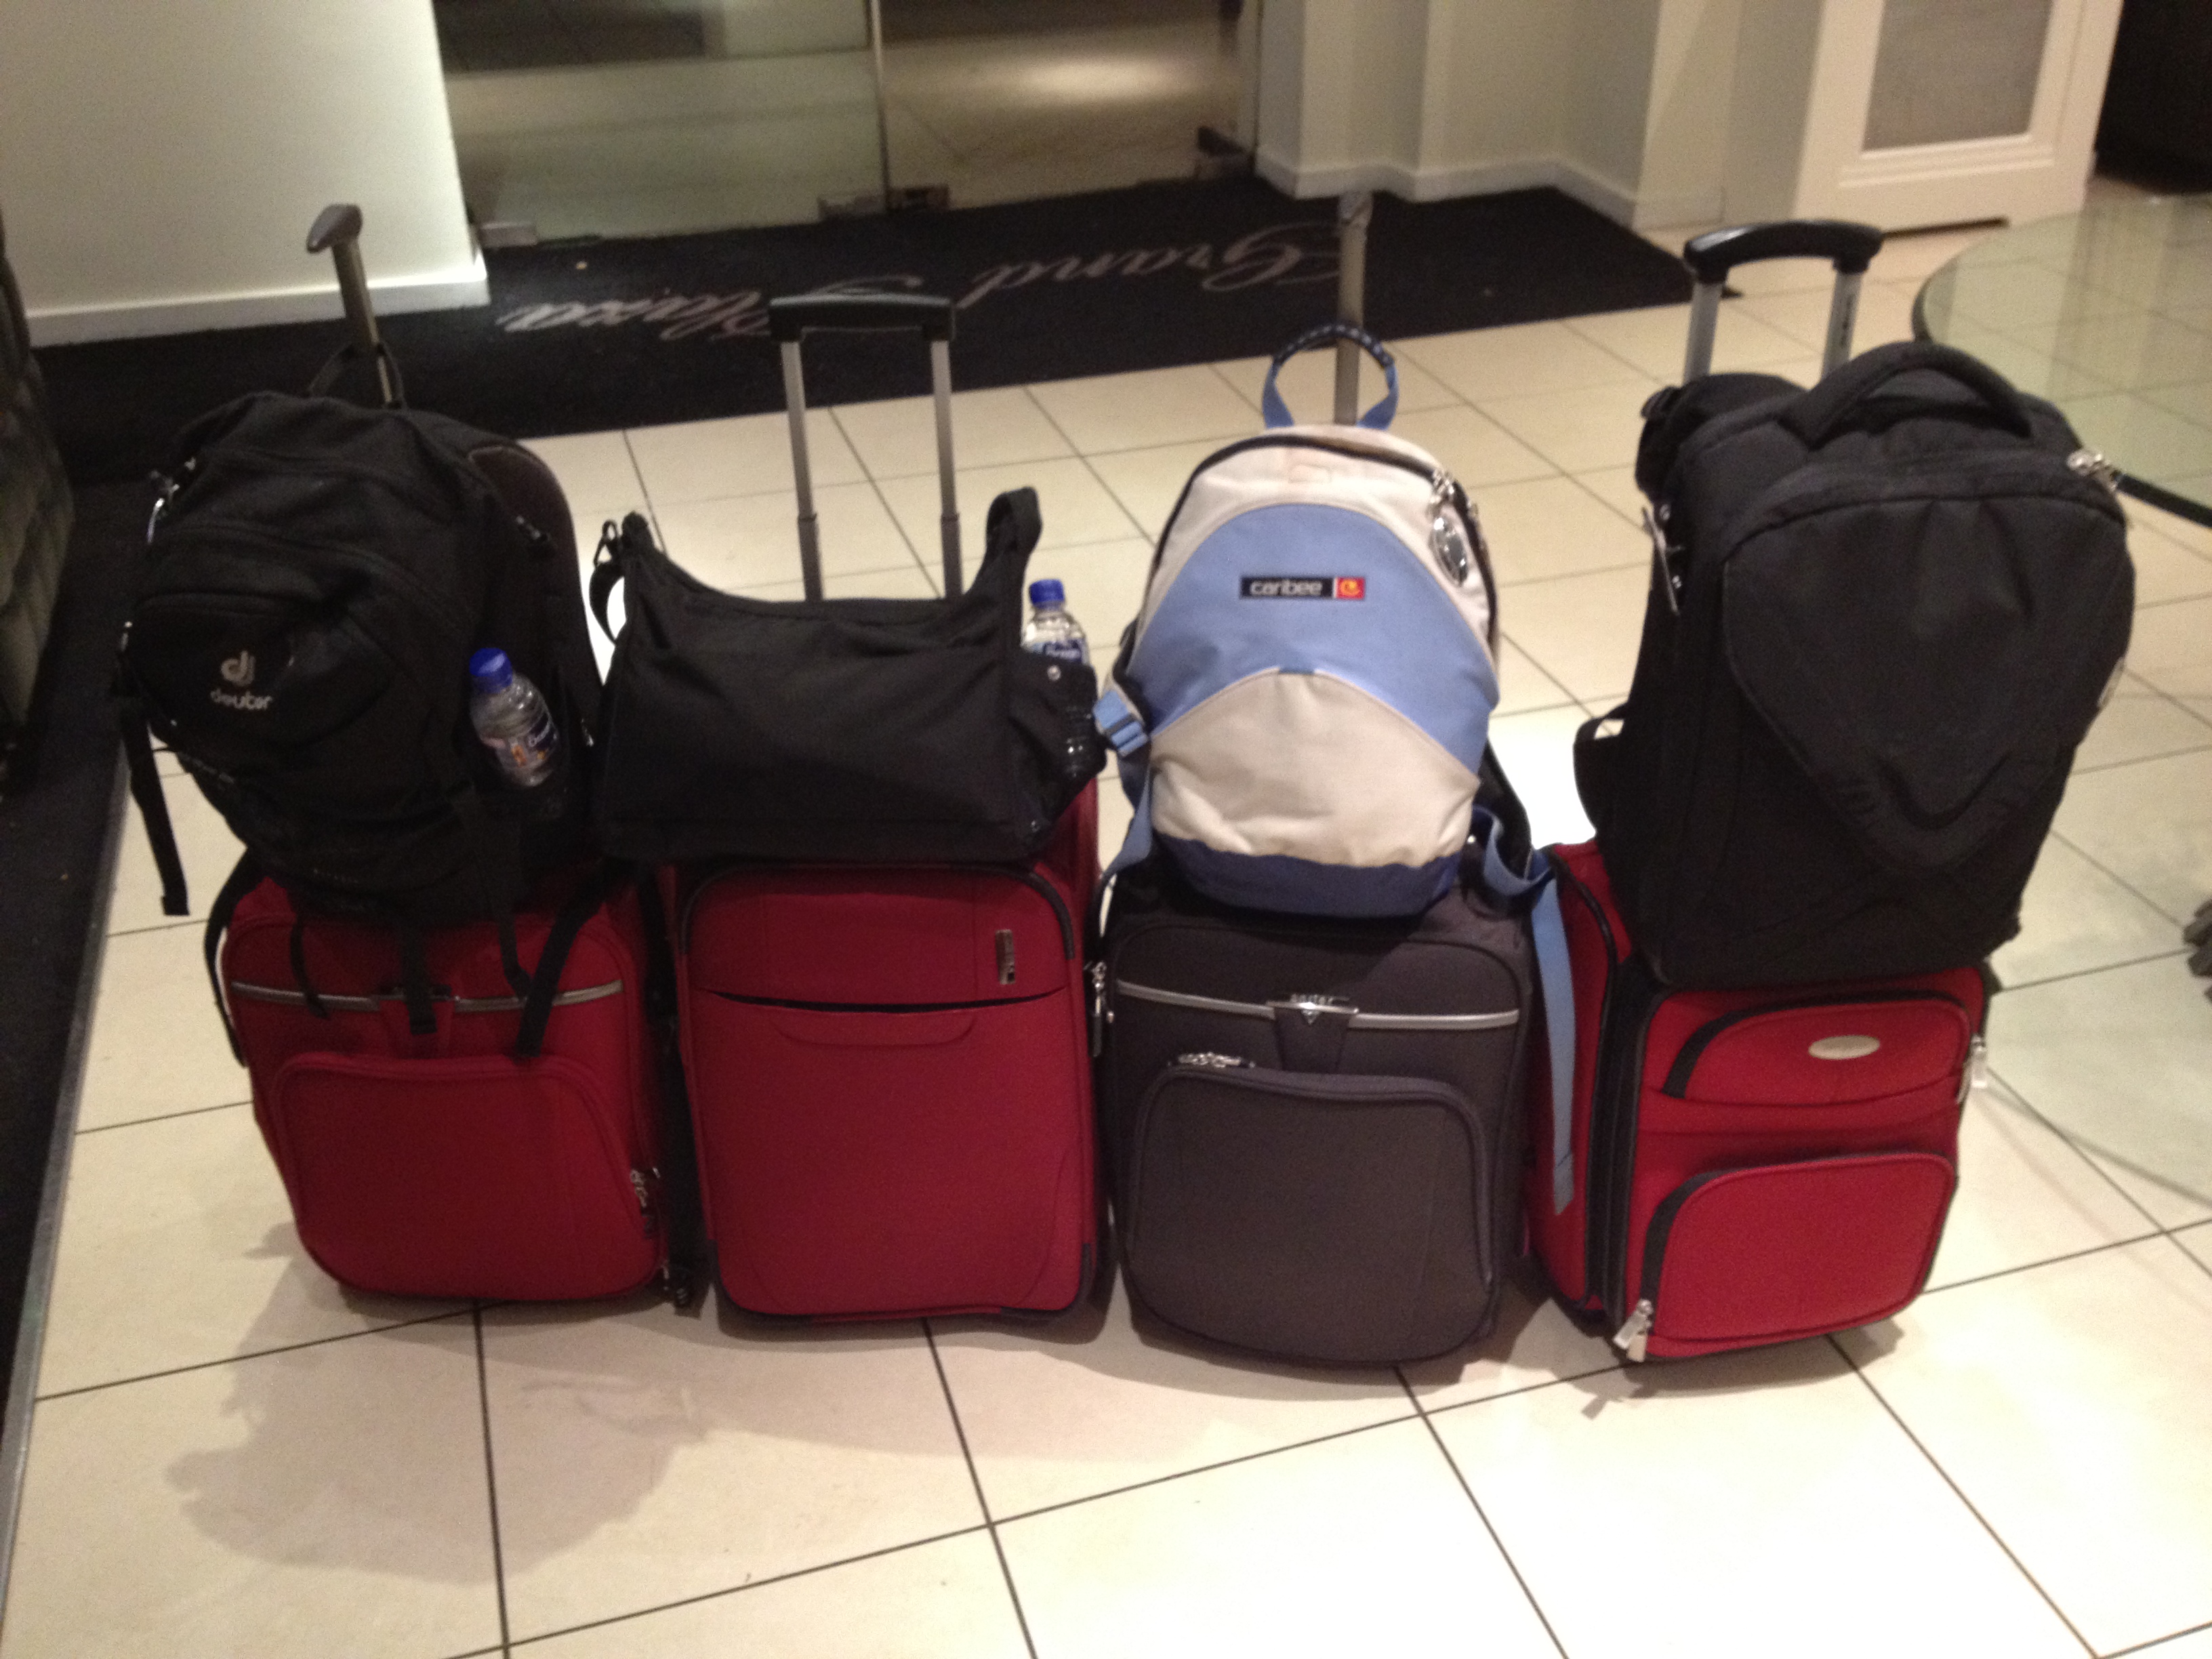 savaari-end-of-journey-packed-bags